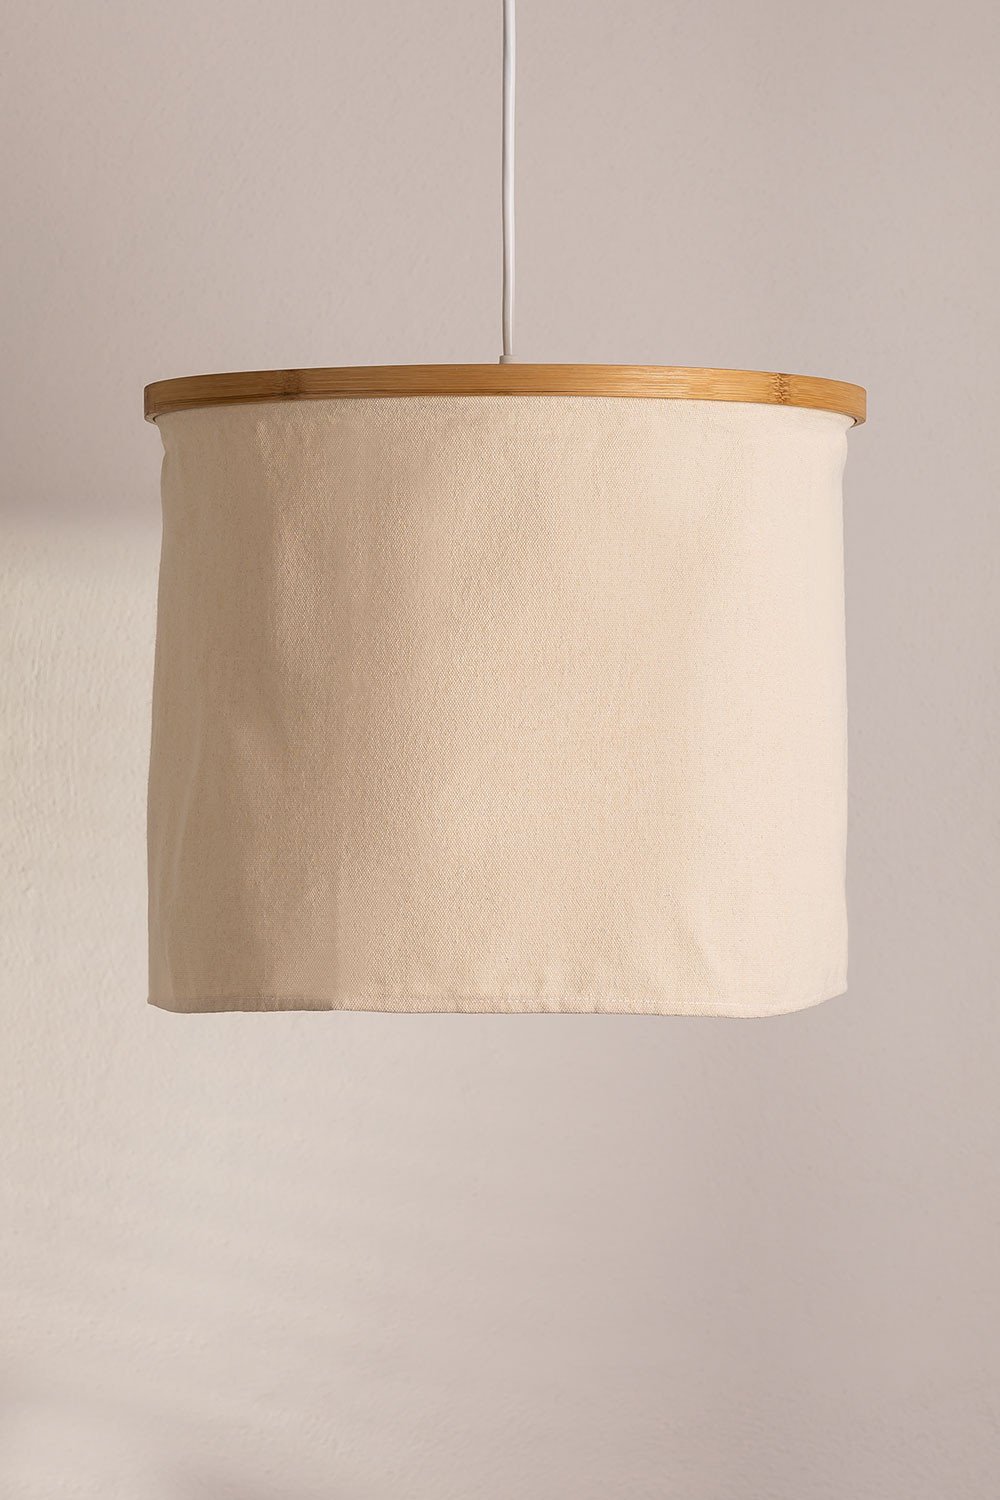 Lampada da soffitto in cotone Namyt, immagine della galleria 2